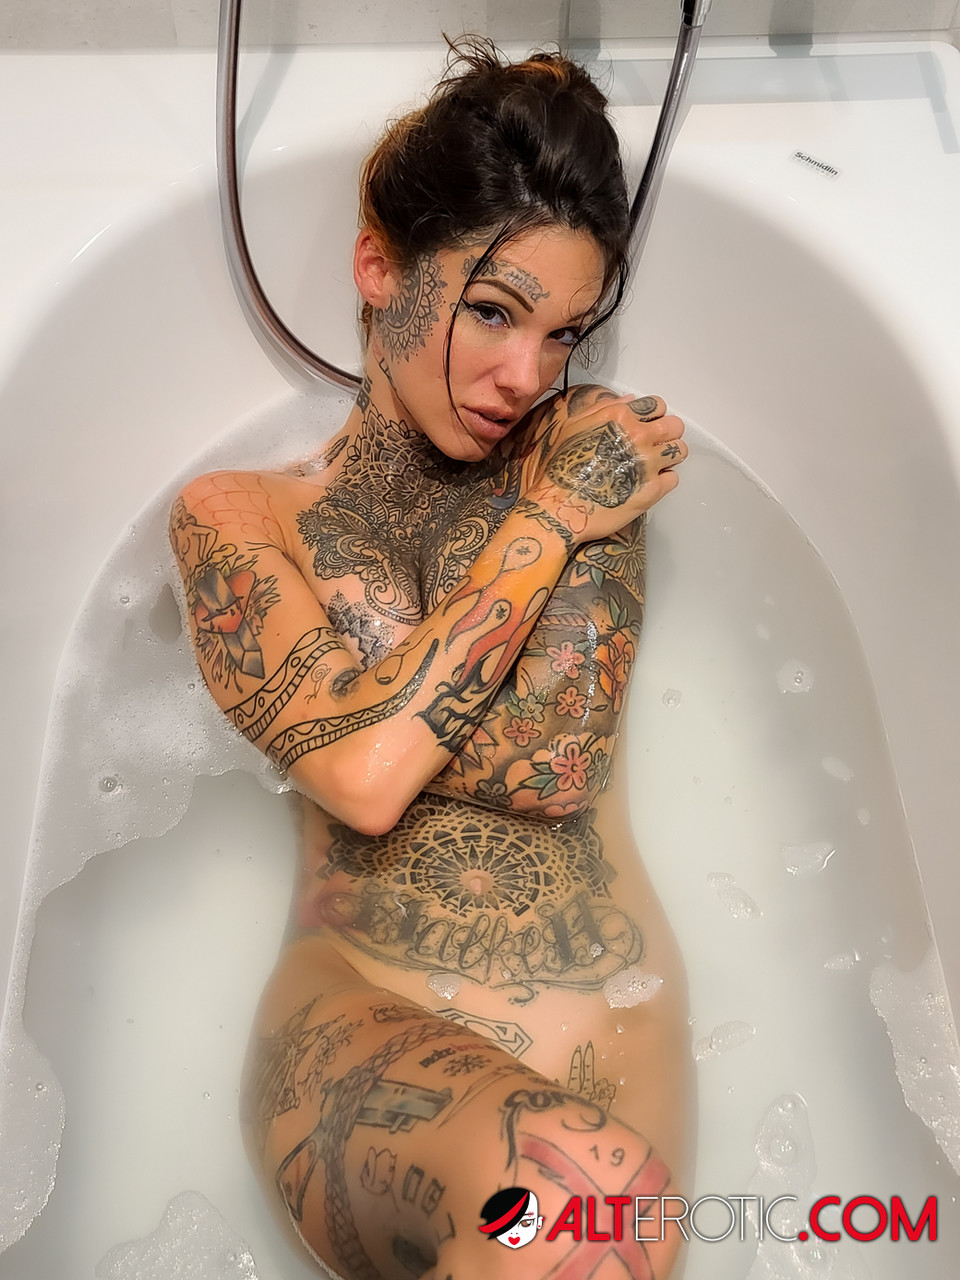 Tattooed girl Lucy Zzz takes a bath after POV sex in a bathtub porno foto #422562628 | Alt Erotic Pics, Lucy Zzz, Tattoo, mobiele porno